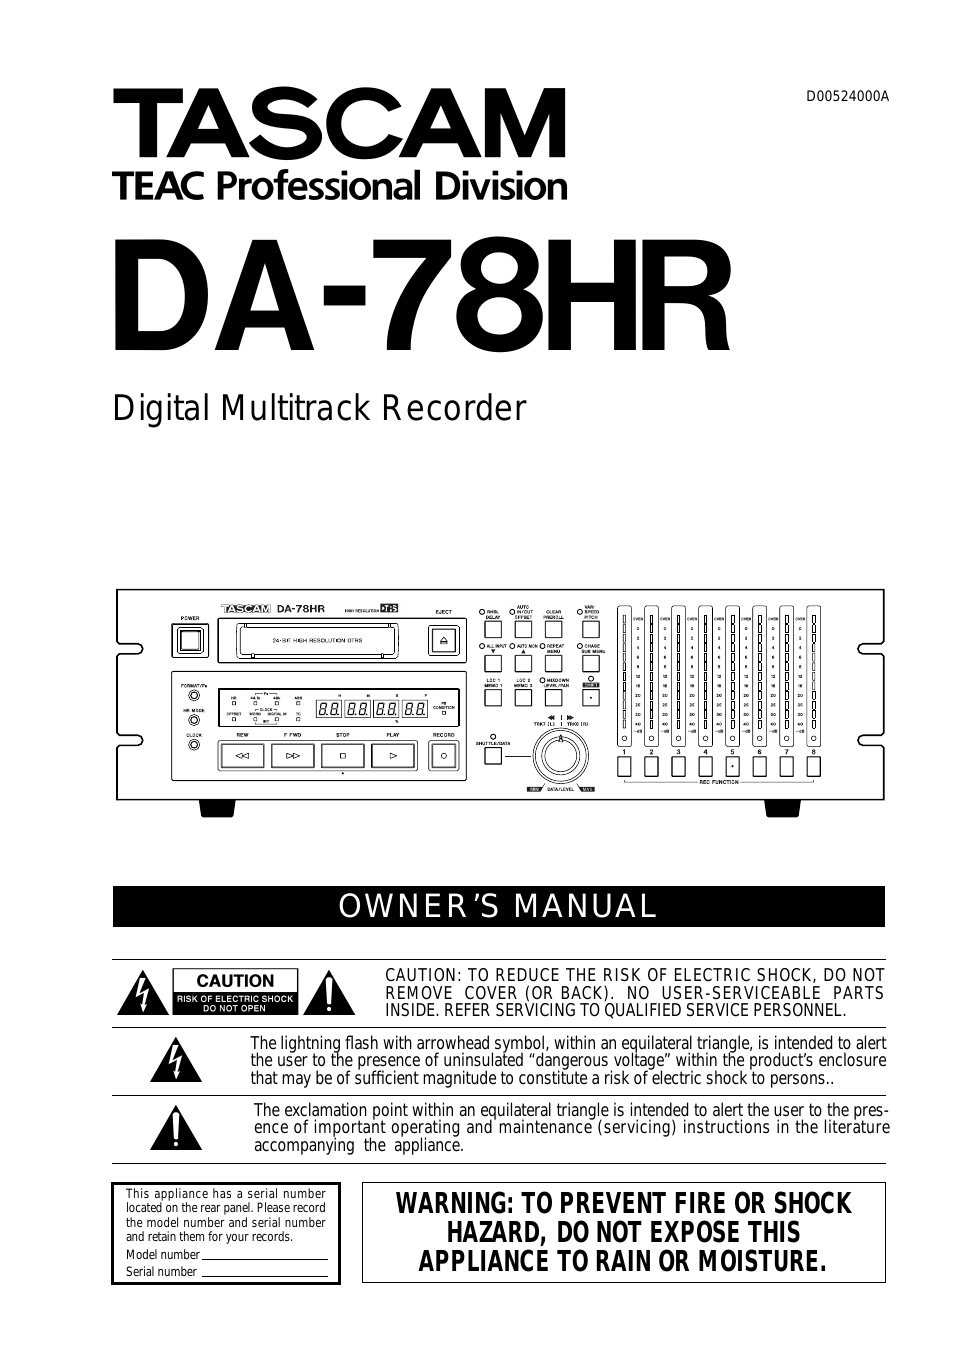 DA-78HR